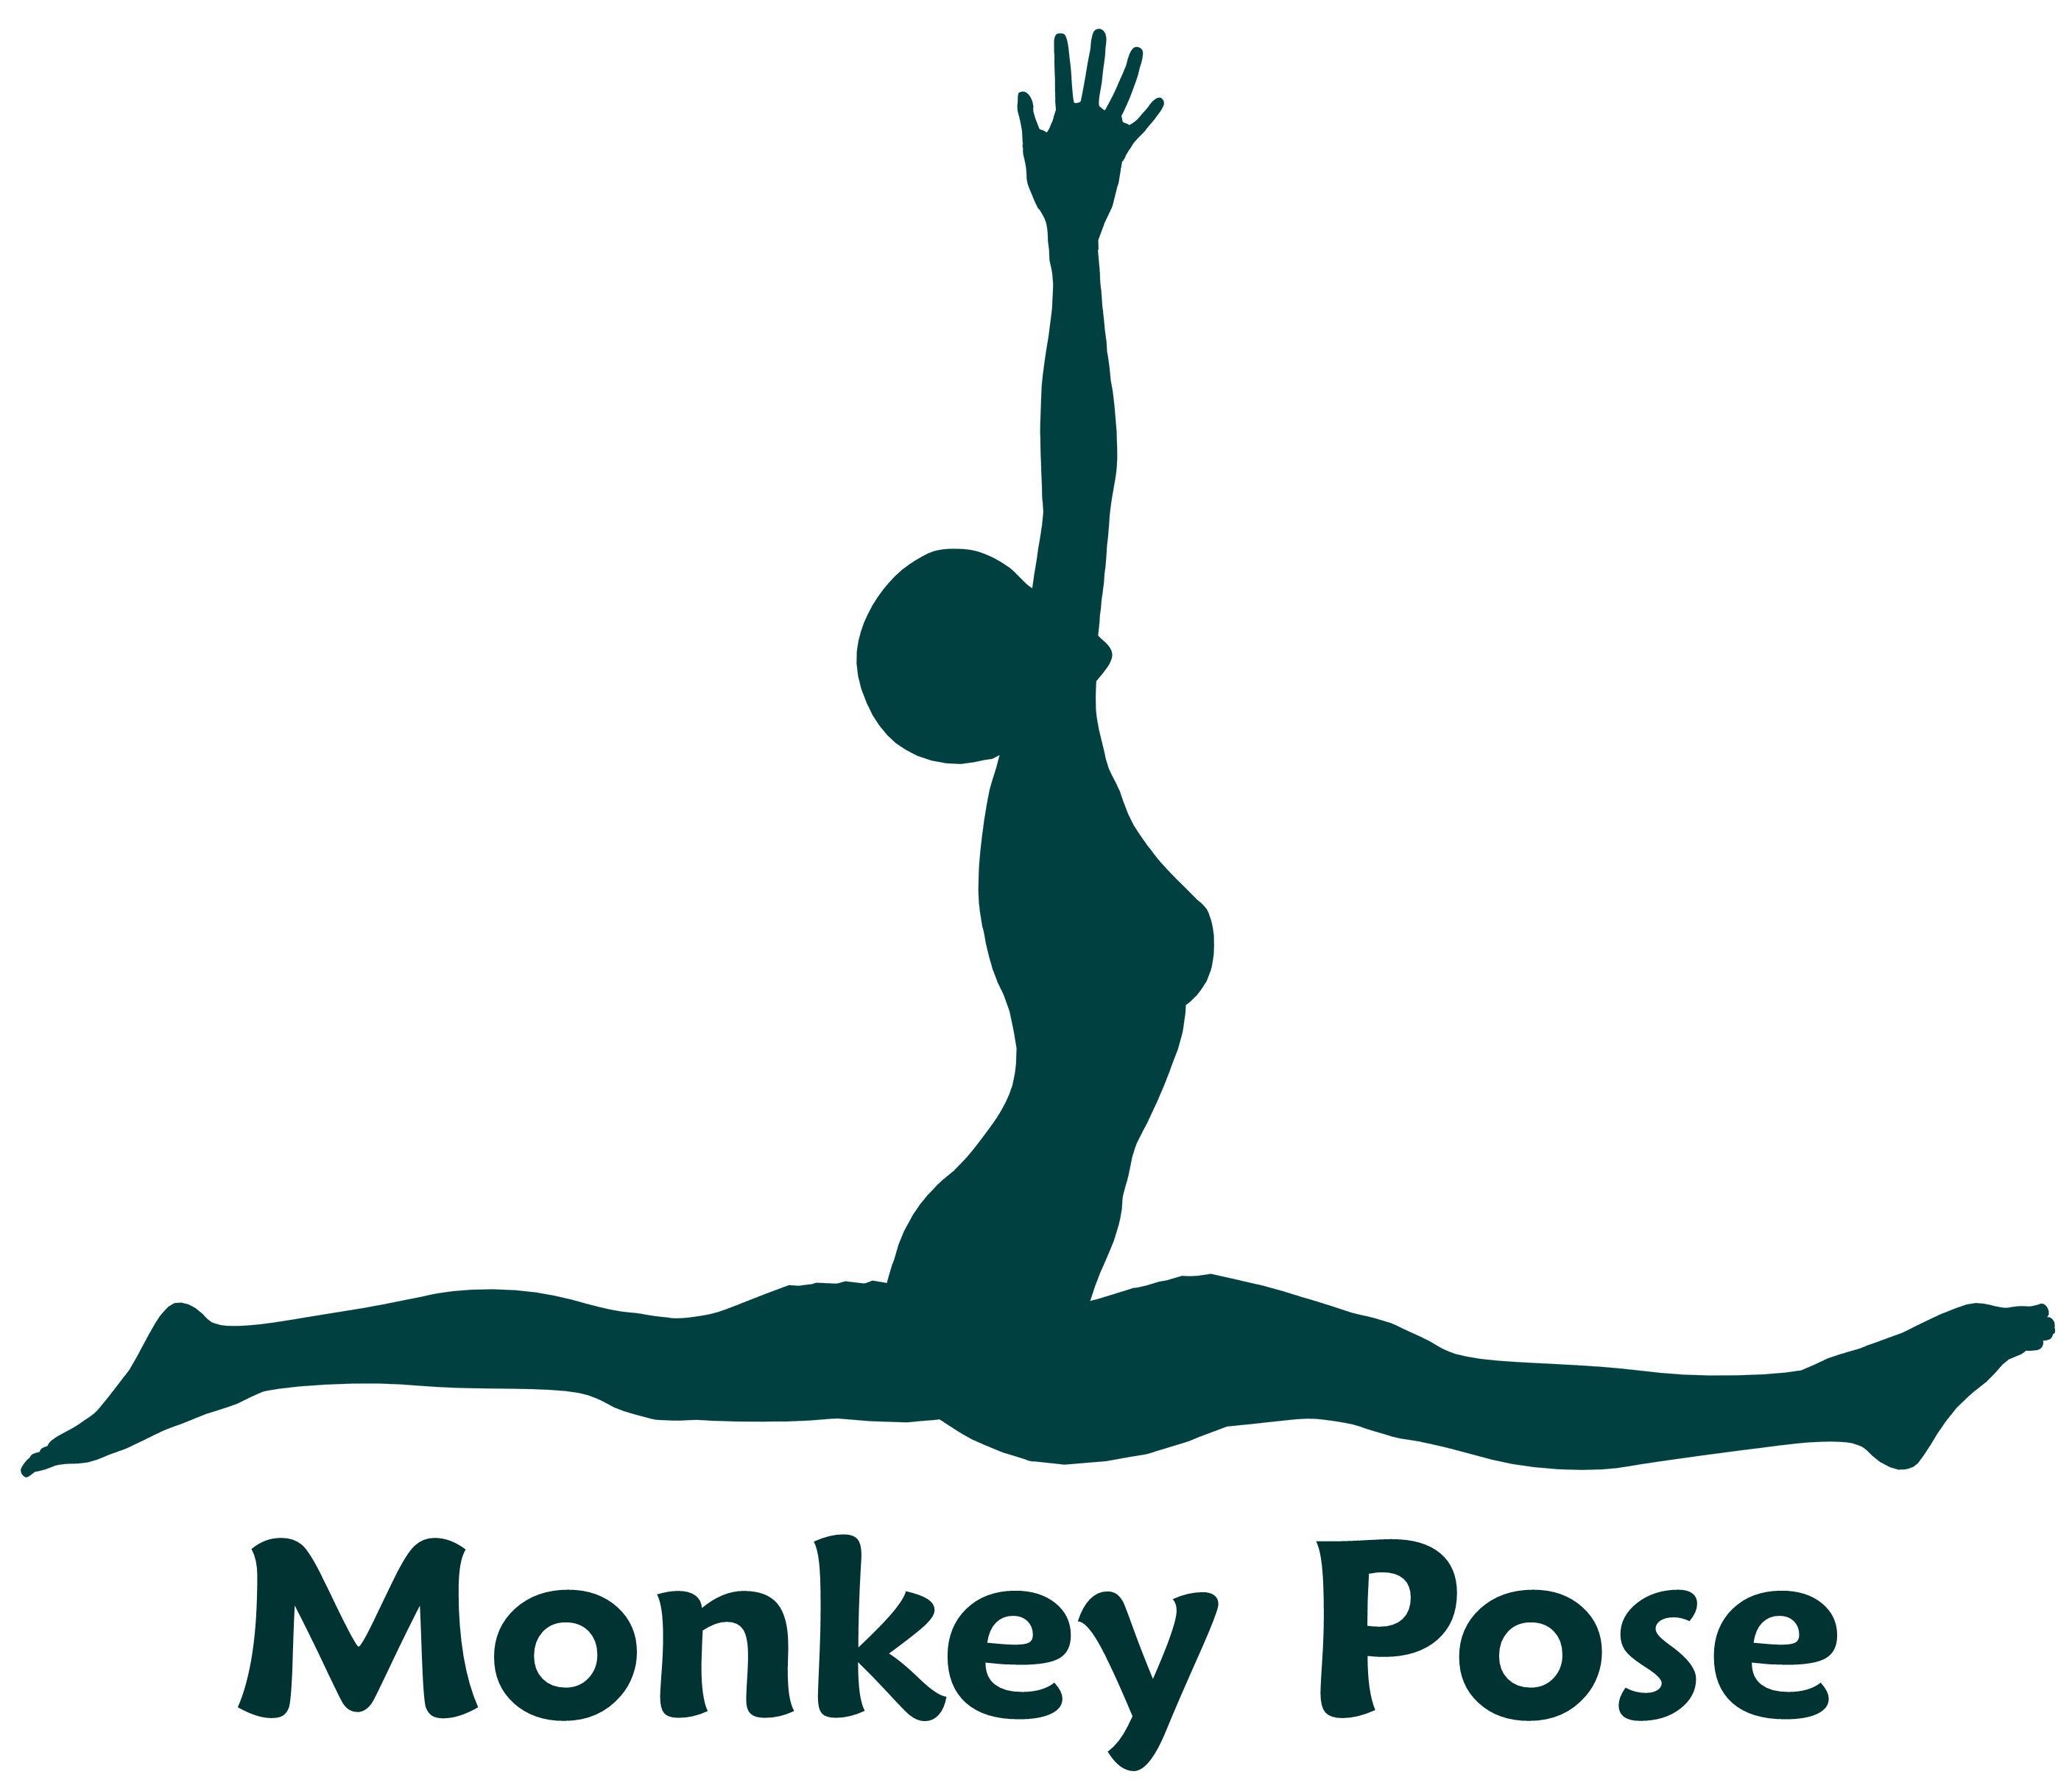 Monkey pose photo